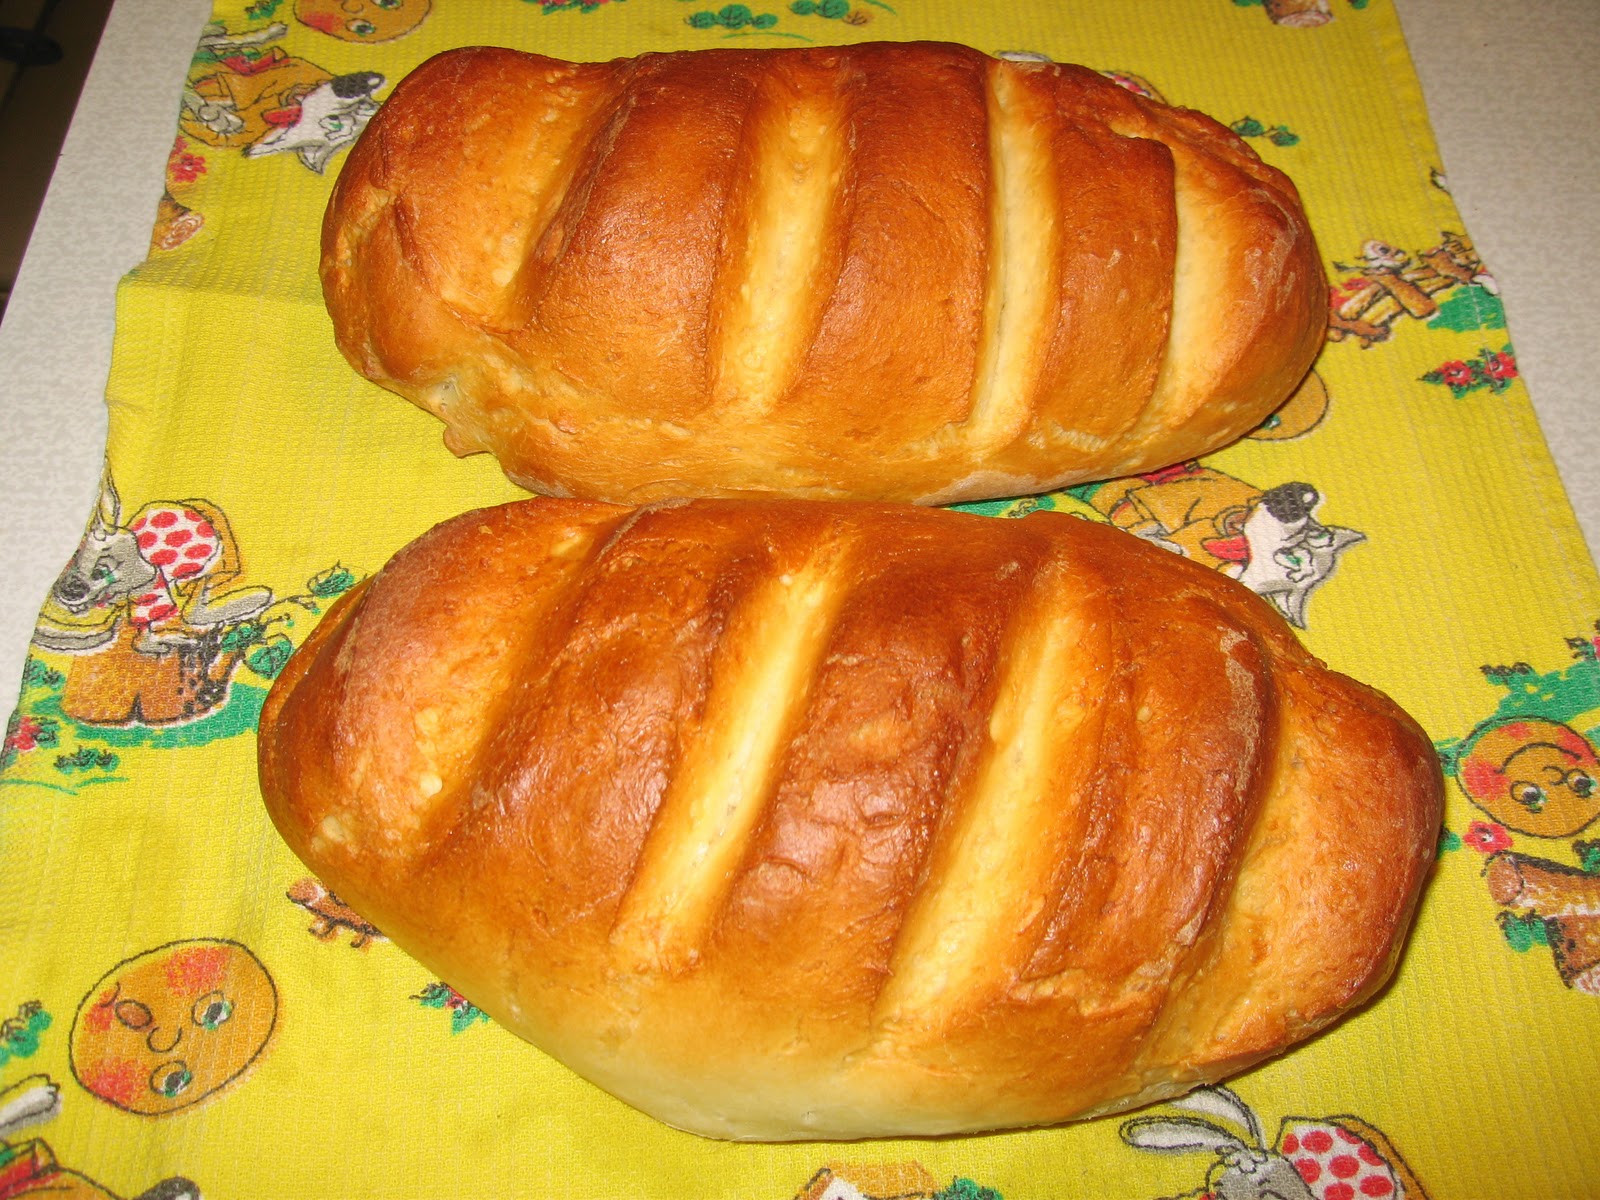 Горчичный хлеб рецепт